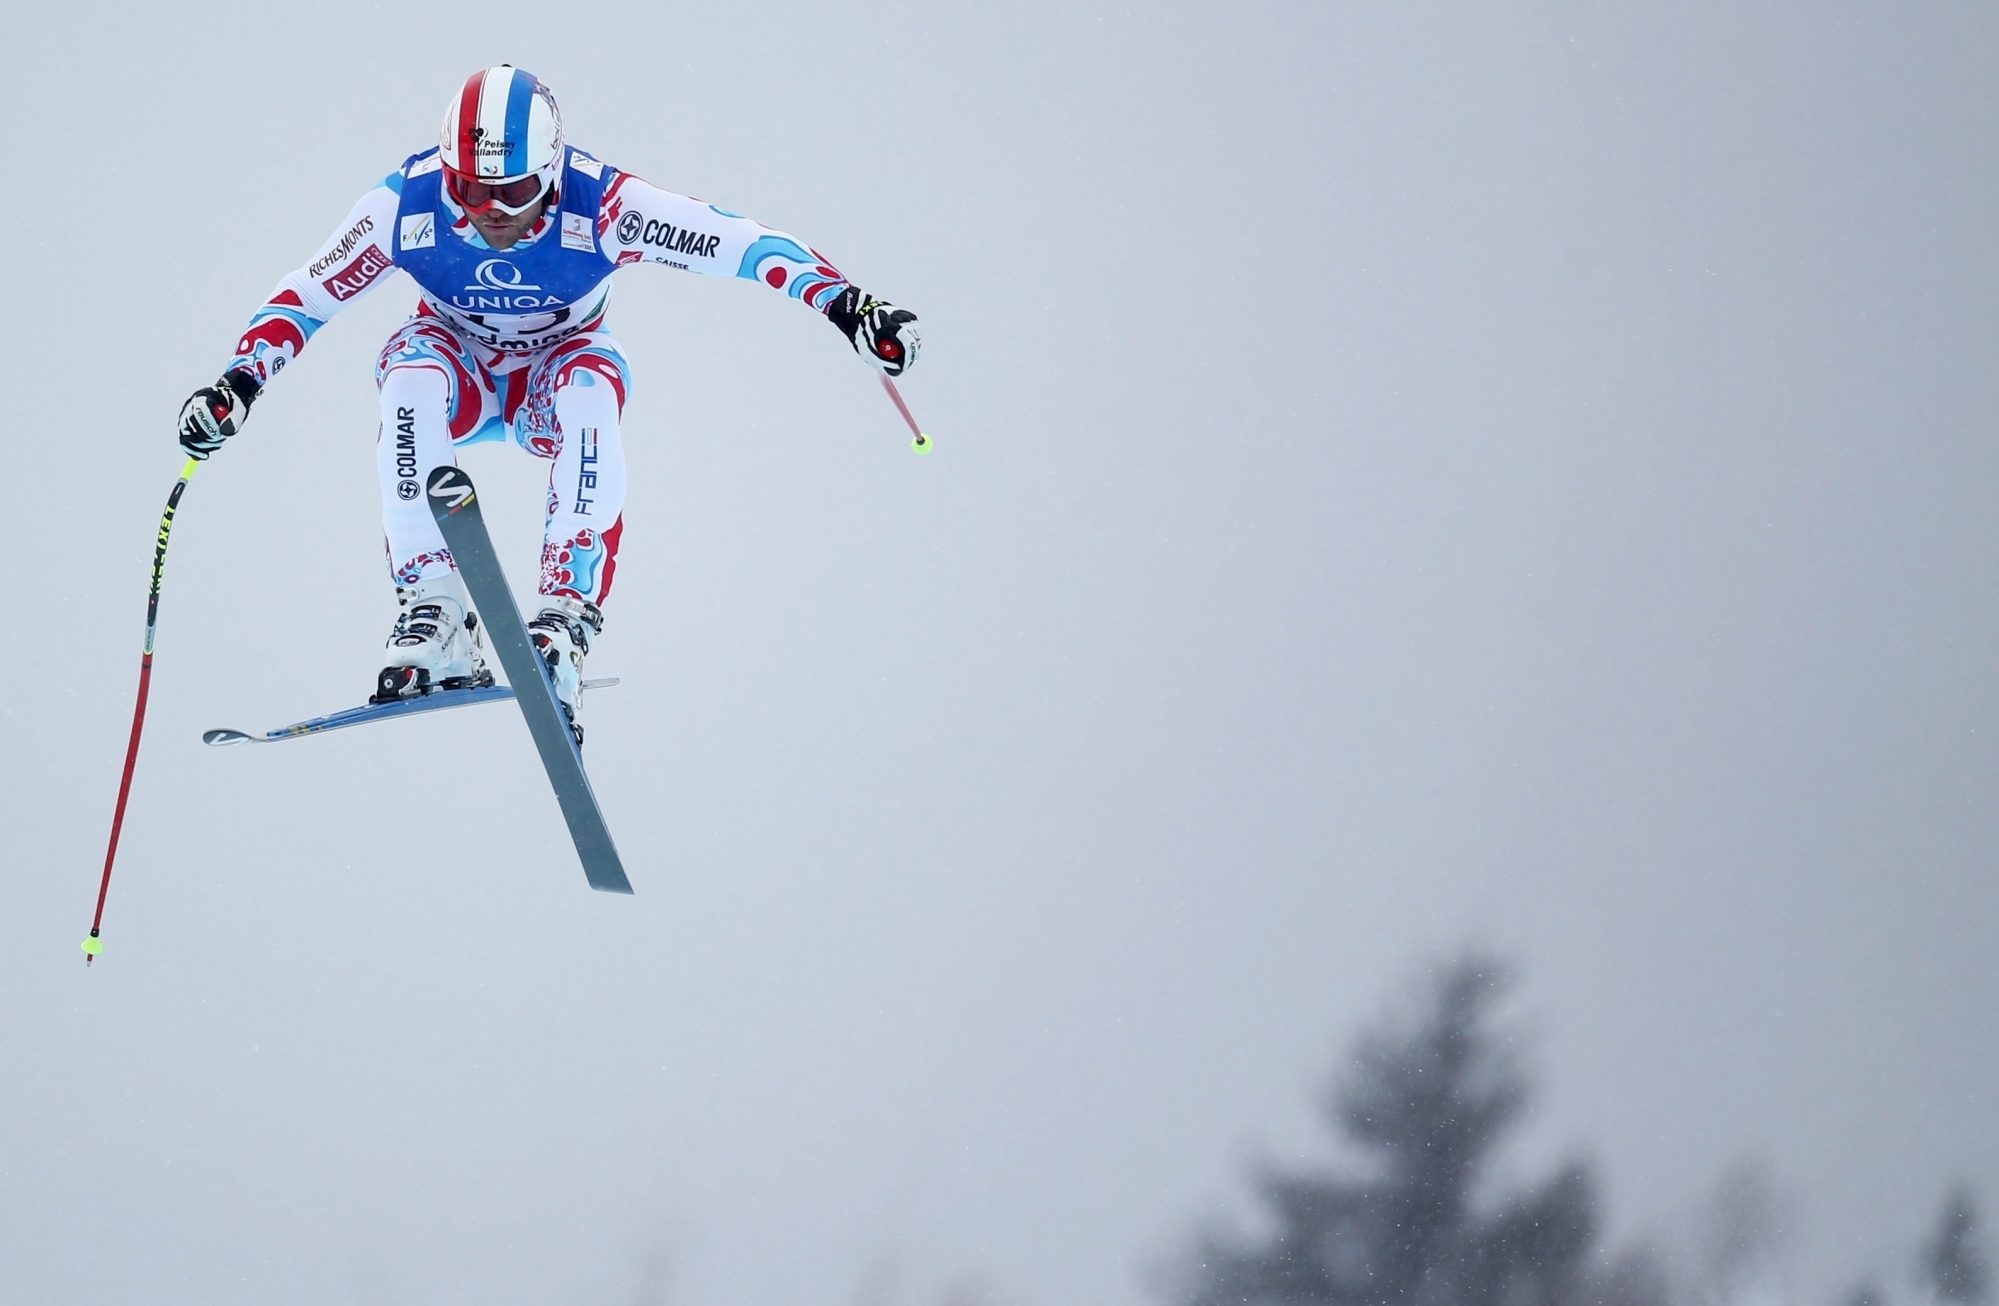 Le rendez-vous de Lake Louise qui ouvre la saison des épreuves de vitesse ce week-end sera marqué par l’absence du skieur français David Poisson, décédé il y a dix jours.